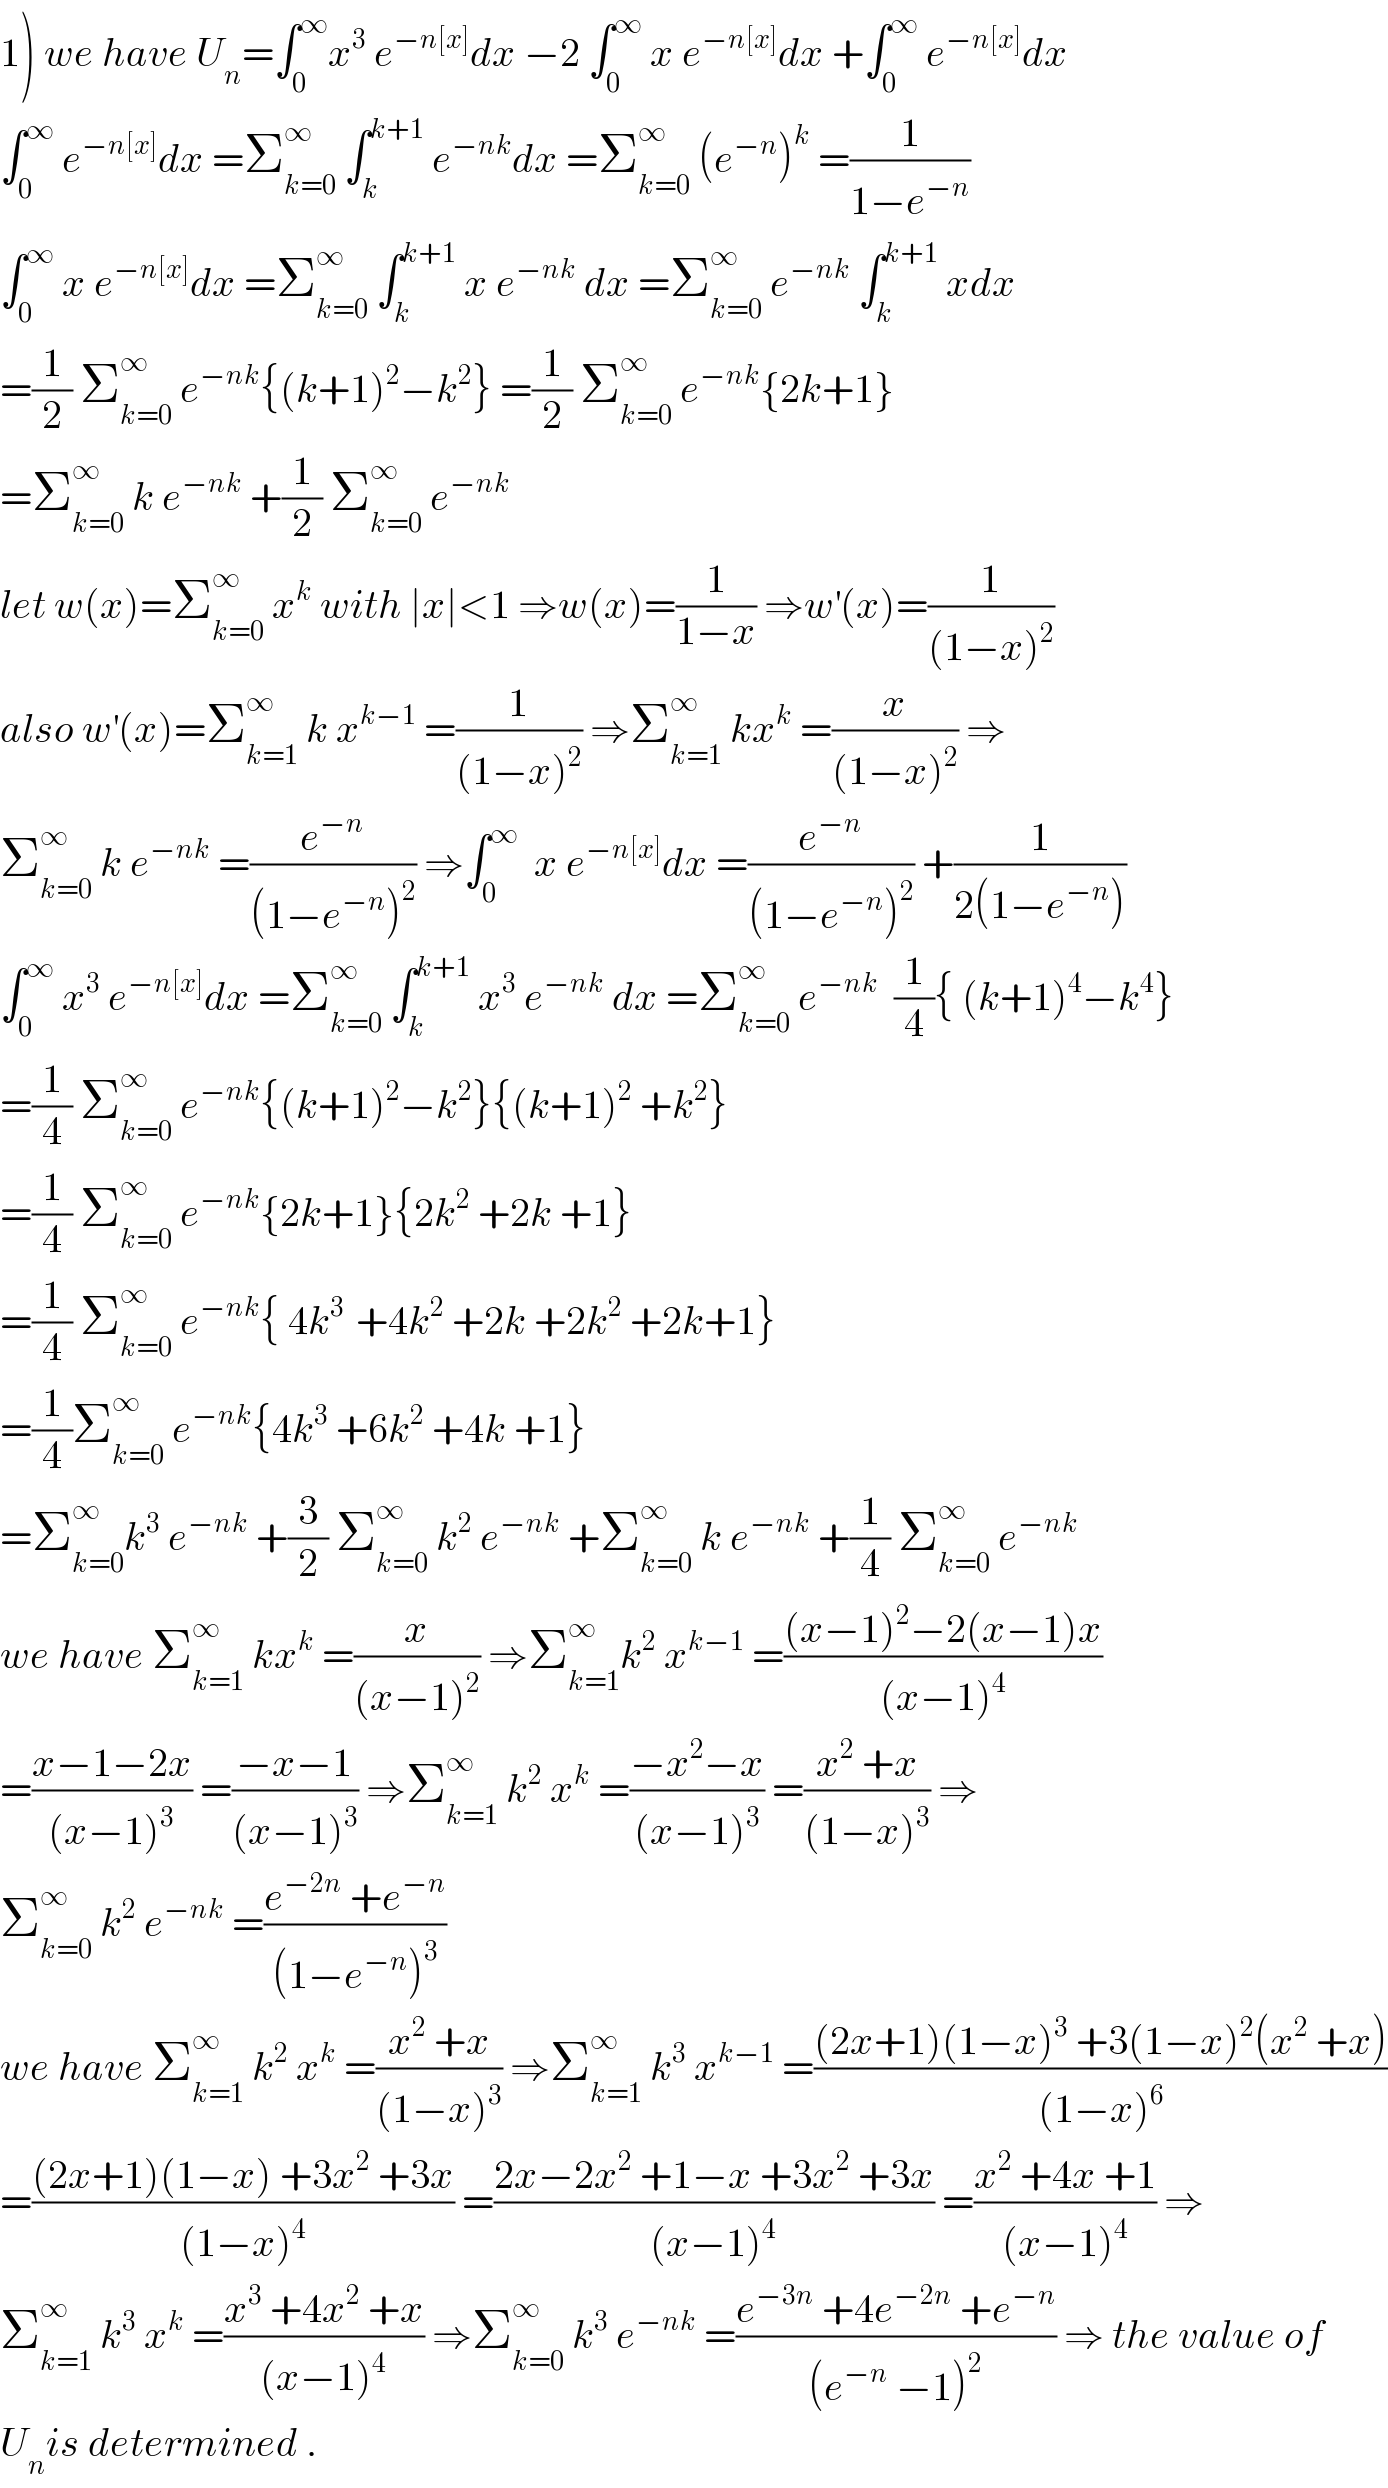 1) we have U_n =∫_0 ^∞ x^3  e^(−n[x]) dx −2 ∫_0 ^∞  x e^(−n[x]) dx +∫_0 ^∞  e^(−n[x]) dx  ∫_0 ^∞  e^(−n[x]) dx =Σ_(k=0) ^∞  ∫_k ^(k+1)  e^(−nk) dx =Σ_(k=0) ^∞  (e^(−n) )^k  =(1/(1−e^(−n) ))  ∫_0 ^∞  x e^(−n[x]) dx =Σ_(k=0) ^∞  ∫_k ^(k+1)  x e^(−nk)  dx =Σ_(k=0) ^∞  e^(−nk)  ∫_k ^(k+1)  xdx  =(1/2) Σ_(k=0) ^∞  e^(−nk) {(k+1)^2 −k^2 } =(1/2) Σ_(k=0) ^∞  e^(−nk) {2k+1}  =Σ_(k=0) ^∞  k e^(−nk)  +(1/2) Σ_(k=0) ^∞  e^(−nk)   let w(x)=Σ_(k=0) ^∞  x^k  with ∣x∣<1 ⇒w(x)=(1/(1−x)) ⇒w^′ (x)=(1/((1−x)^2 ))  also w^′ (x)=Σ_(k=1) ^∞  k x^(k−1)  =(1/((1−x)^2 )) ⇒Σ_(k=1) ^∞  kx^k  =(x/((1−x)^2 )) ⇒  Σ_(k=0) ^∞  k e^(−nk)  =(e^(−n) /((1−e^(−n) )^2 )) ⇒∫_0 ^∞   x e^(−n[x]) dx =(e^(−n) /((1−e^(−n) )^2 )) +(1/(2(1−e^(−n) )))  ∫_0 ^∞  x^3  e^(−n[x]) dx =Σ_(k=0) ^∞  ∫_k ^(k+1)  x^3  e^(−nk)  dx =Σ_(k=0) ^∞  e^(−nk)   (1/4){ (k+1)^4 −k^4 }  =(1/4) Σ_(k=0) ^∞  e^(−nk) {(k+1)^2 −k^2 }{(k+1)^2  +k^2 }  =(1/4) Σ_(k=0) ^∞  e^(−nk) {2k+1}{2k^2  +2k +1}  =(1/4) Σ_(k=0) ^∞  e^(−nk) { 4k^(3 )  +4k^2  +2k +2k^2  +2k+1}  =(1/4)Σ_(k=0) ^∞  e^(−nk) {4k^3  +6k^2  +4k +1}  =Σ_(k=0) ^∞ k^3  e^(−nk)  +(3/2) Σ_(k=0) ^∞  k^2  e^(−nk)  +Σ_(k=0) ^∞  k e^(−nk)  +(1/4) Σ_(k=0) ^∞  e^(−nk)   we have Σ_(k=1) ^∞  kx^k  =(x/((x−1)^2 )) ⇒Σ_(k=1) ^∞ k^2  x^(k−1)  =(((x−1)^2 −2(x−1)x)/((x−1)^4 ))  =((x−1−2x)/((x−1)^3 )) =((−x−1)/((x−1)^3 )) ⇒Σ_(k=1) ^∞  k^2  x^k  =((−x^2 −x)/((x−1)^3 )) =((x^2  +x)/((1−x)^3 )) ⇒  Σ_(k=0) ^∞  k^2  e^(−nk)  =((e^(−2n)  +e^(−n) )/((1−e^(−n) )^3 ))  we have Σ_(k=1) ^∞  k^2  x^k  =((x^2  +x)/((1−x)^3 )) ⇒Σ_(k=1) ^∞  k^3  x^(k−1)  =(((2x+1)(1−x)^3  +3(1−x)^2 (x^2  +x))/((1−x)^6 ))  =(((2x+1)(1−x) +3x^2  +3x)/((1−x)^4 )) =((2x−2x^2  +1−x +3x^2  +3x)/((x−1)^4 )) =((x^2  +4x +1)/((x−1)^4 )) ⇒  Σ_(k=1) ^∞  k^3  x^k  =((x^3  +4x^2  +x)/((x−1)^4 )) ⇒Σ_(k=0) ^∞  k^3  e^(−nk)  =((e^(−3n)  +4e^(−2n)  +e^(−n) )/((e^(−n)  −1)^2 )) ⇒ the value of  U_n is determined .  